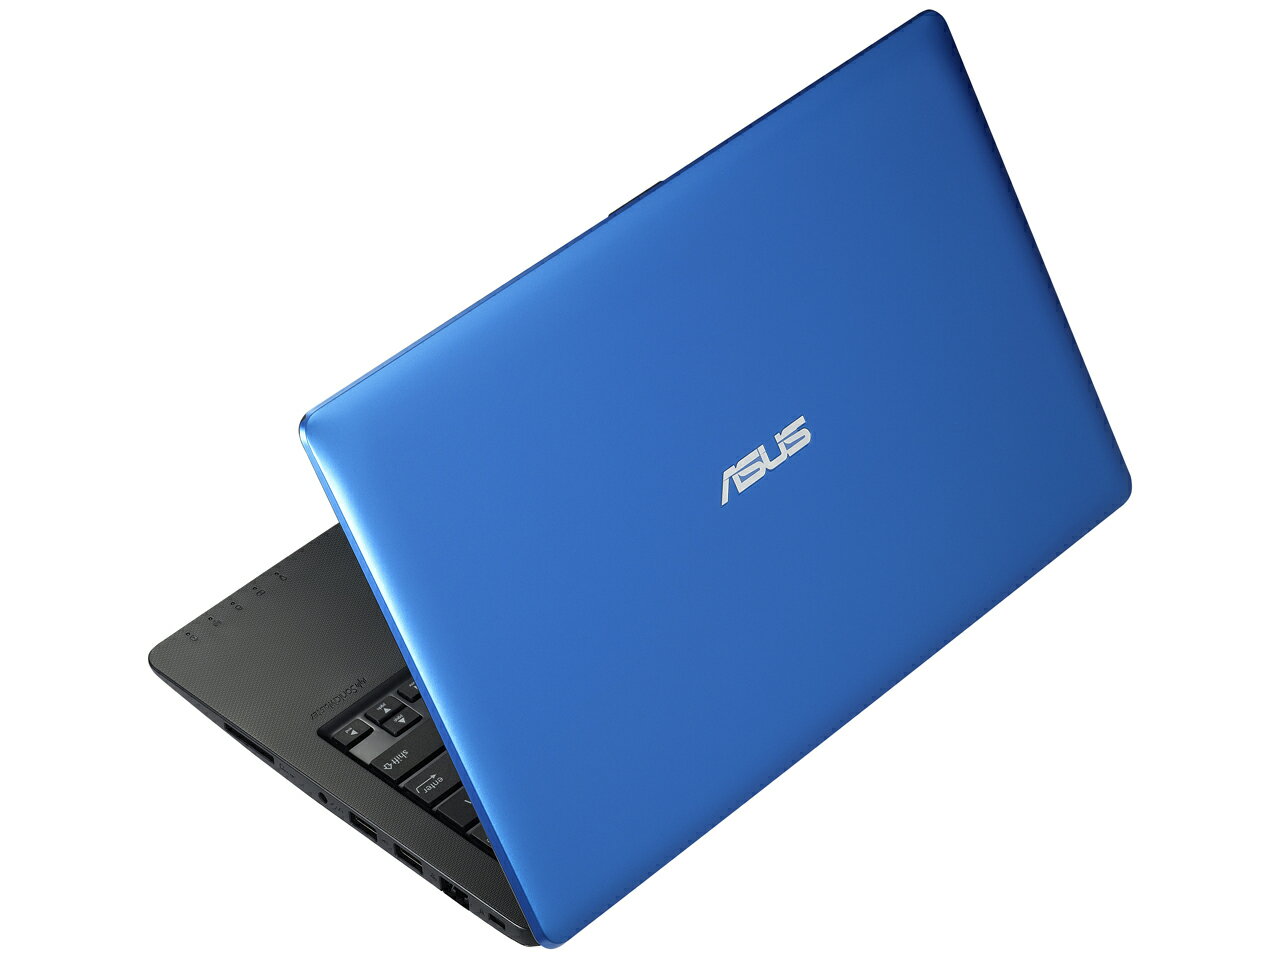 【送料無料】ASUS X200CA-CTBLUE ブルー VivoBook X200CA [ノートパソコン/11.6ワイド液晶/HDD500G...